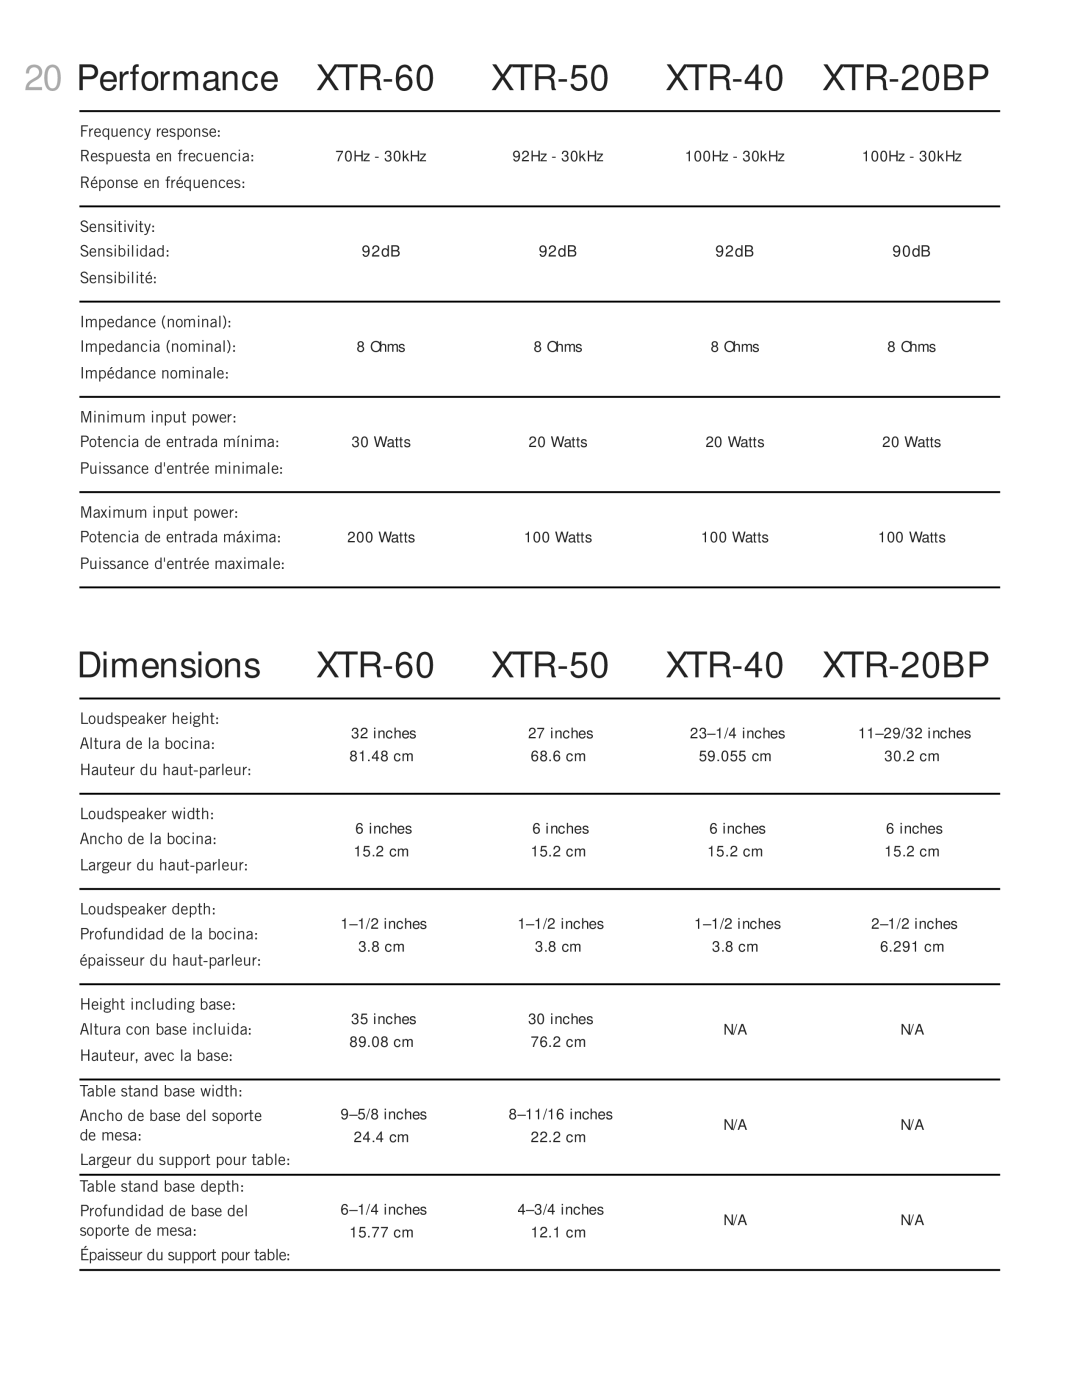 Definitive Technology Mythos XTR Loudspeaker System Performance, XTR-60, XTR-50, XTR-40, XTR-20BP, Dimensions 